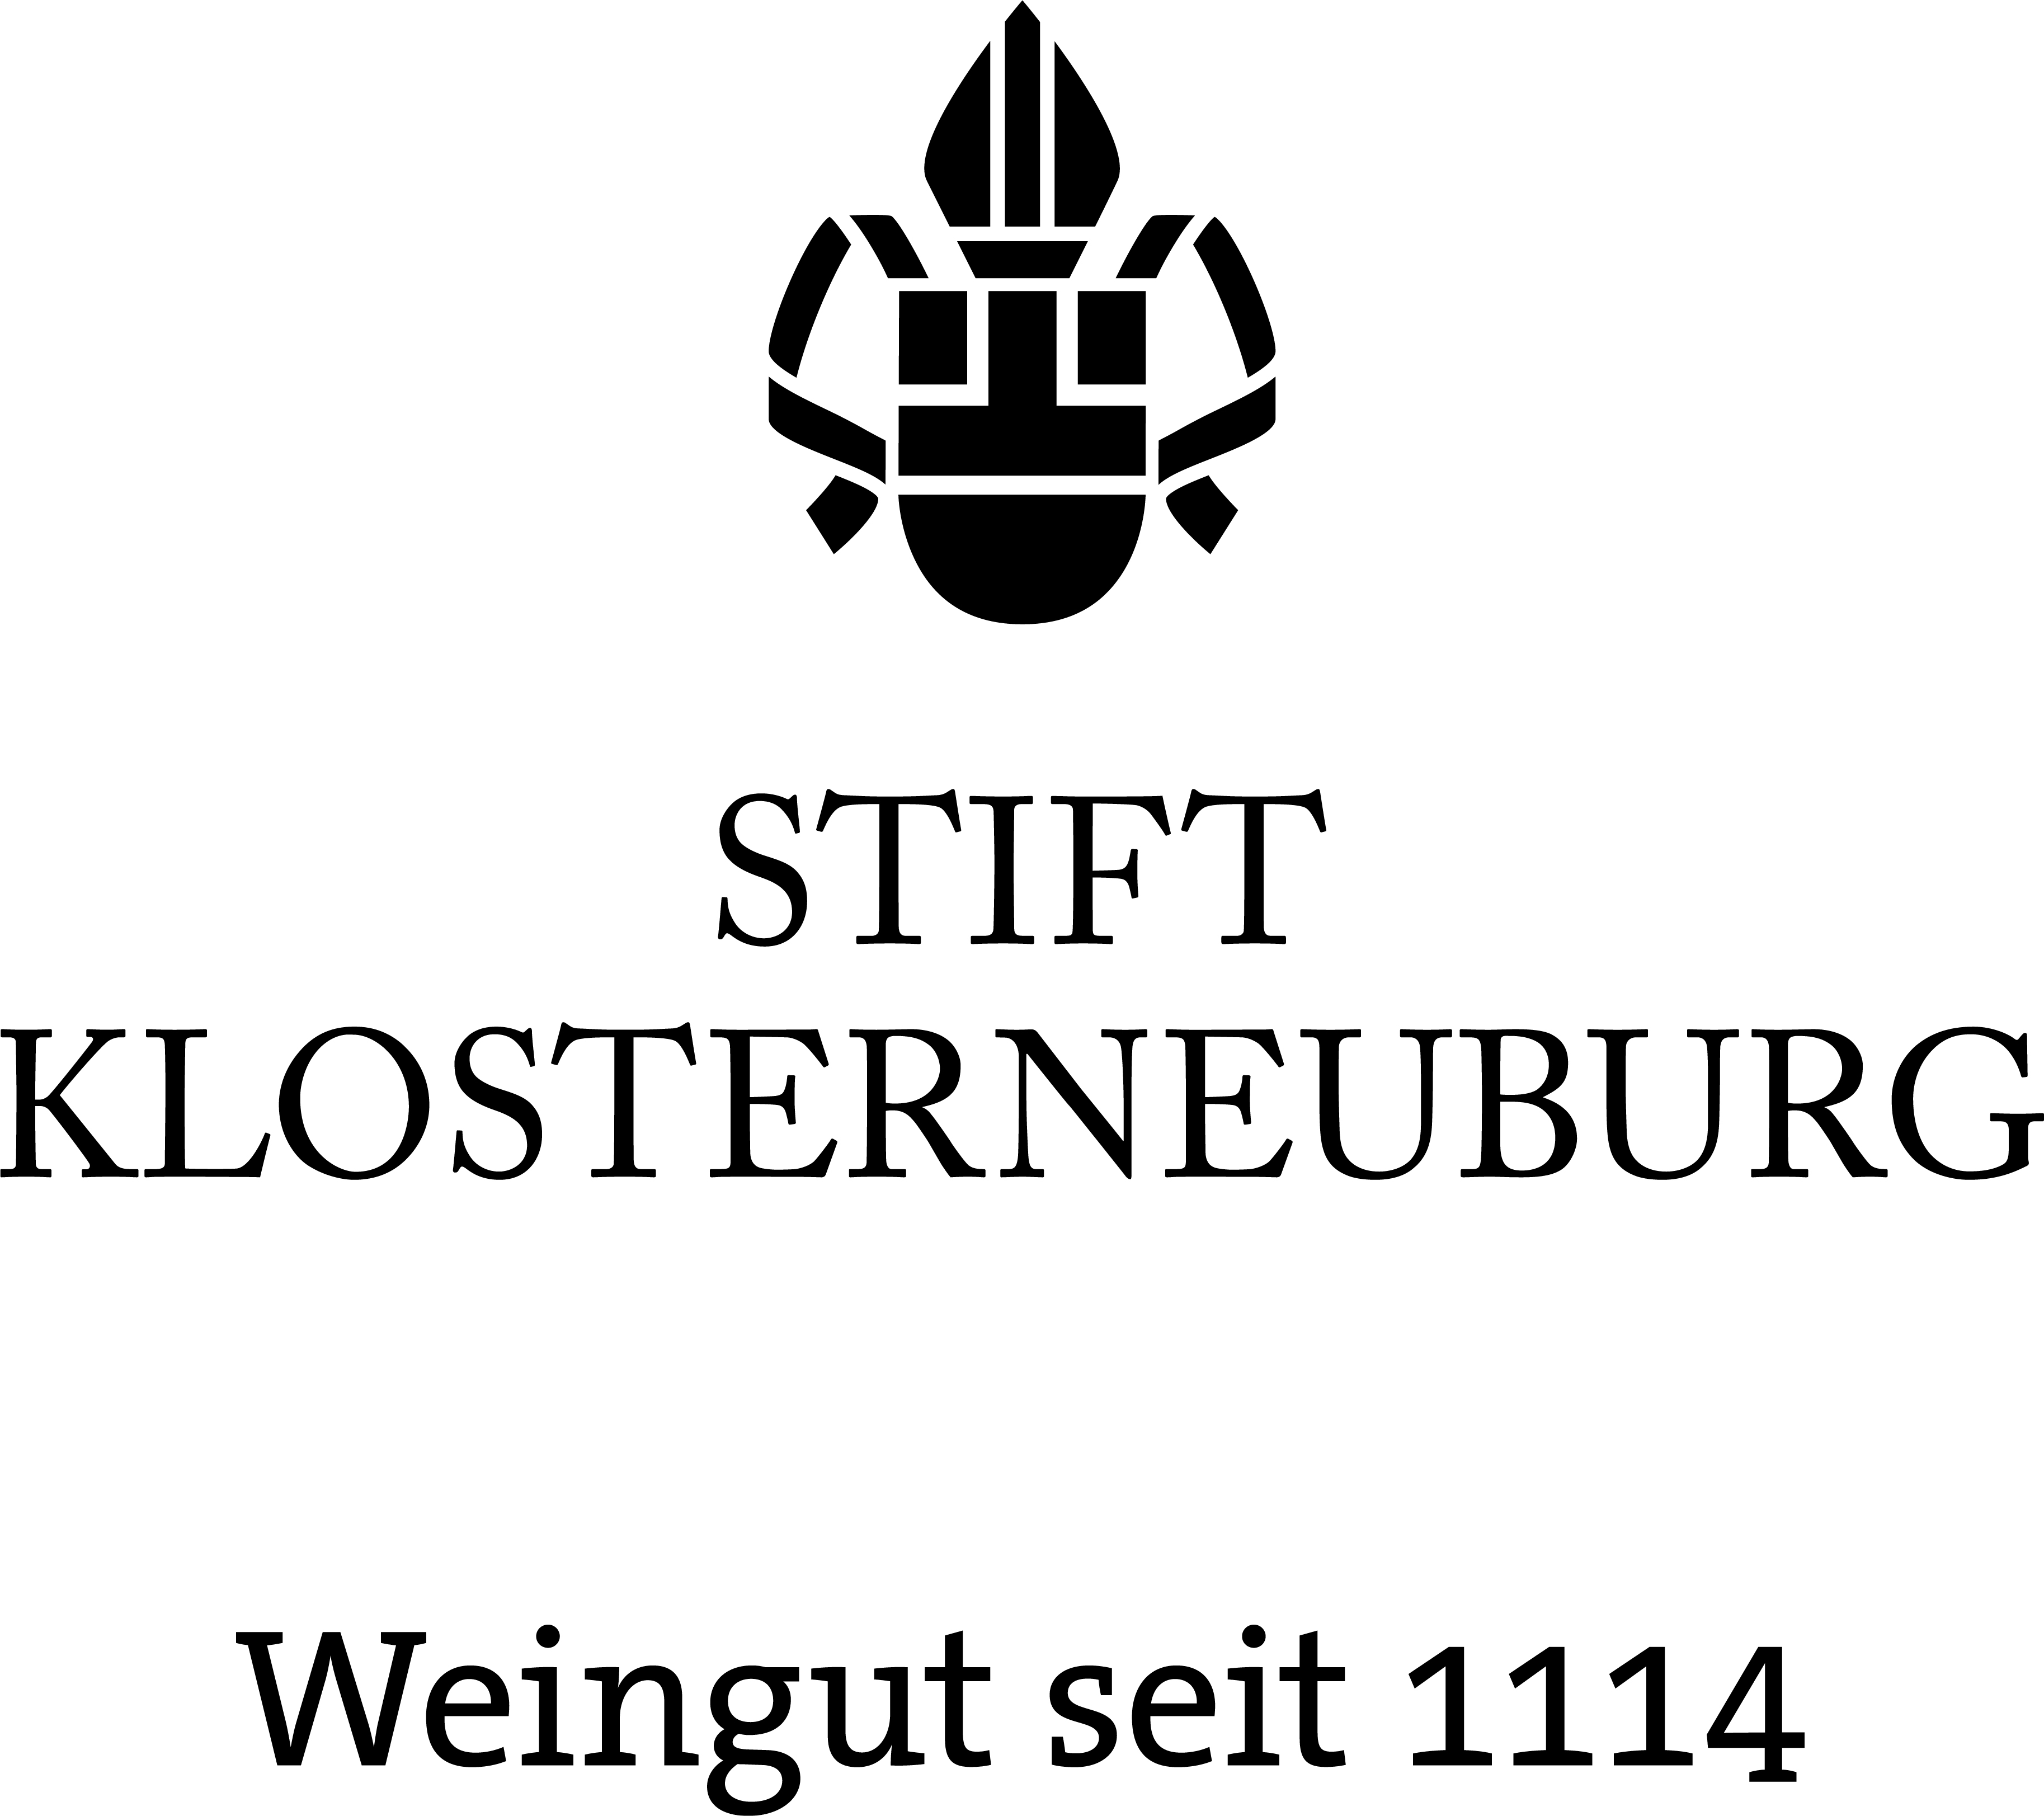 Weingut Stift Klosterneuburg GmbH